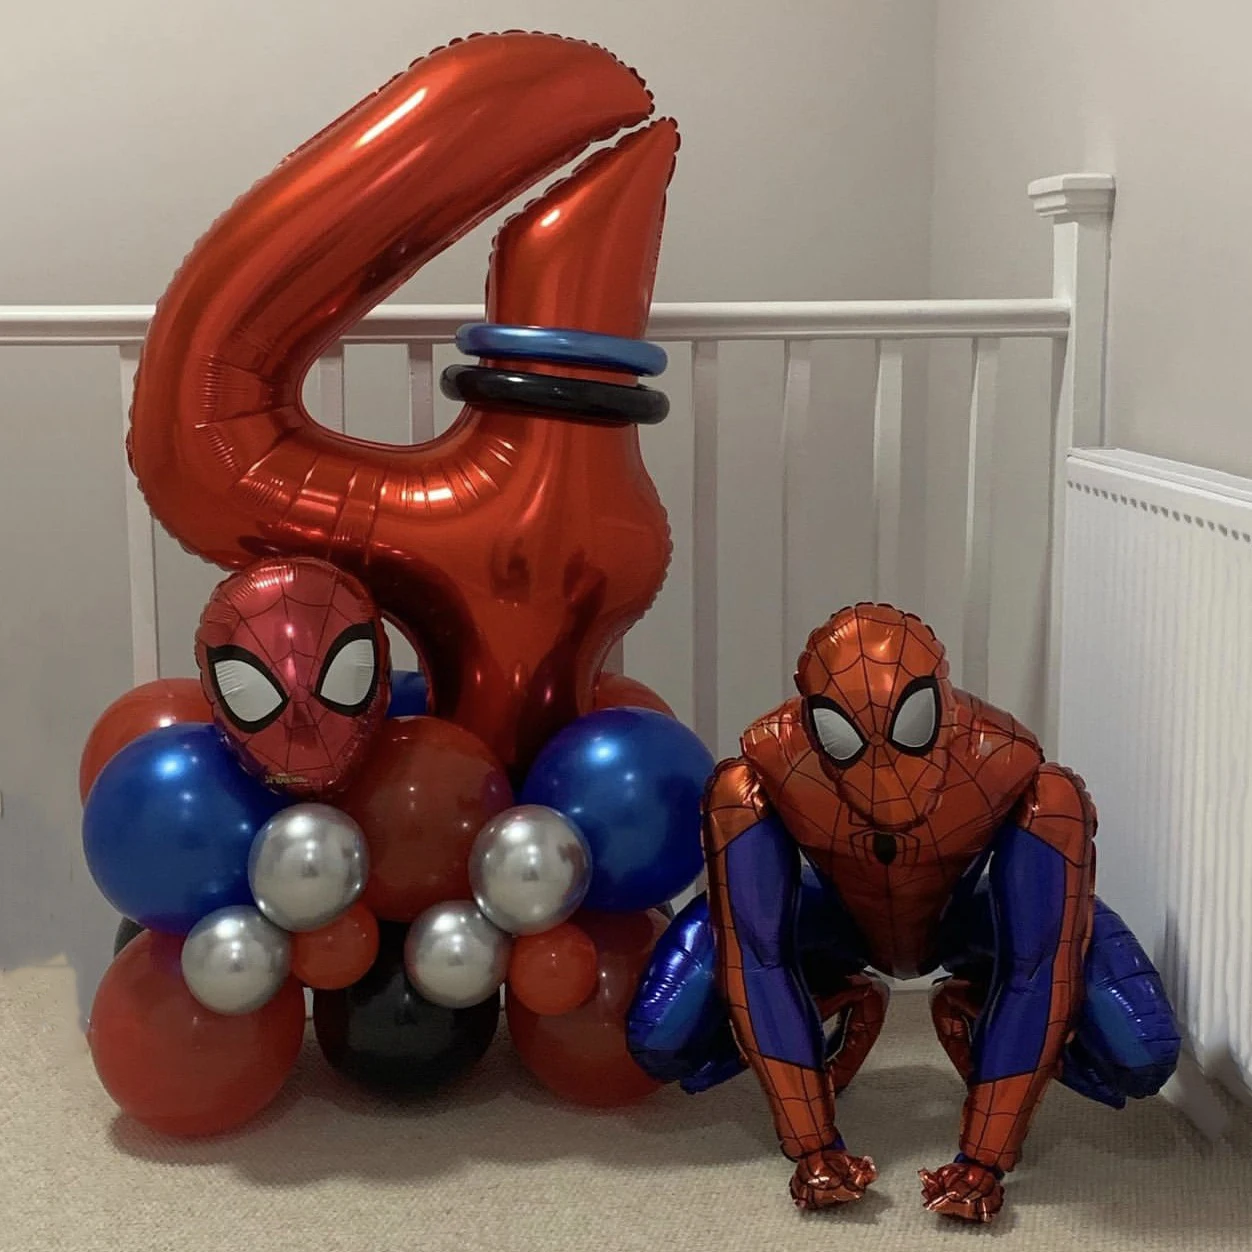 Juego de Globos de Spiderman para fiesta, Globos de látex azul y rojo con temática de superhéroes, decoraciones para fiesta de cumpleaños, Baby Shower, 1 Juego